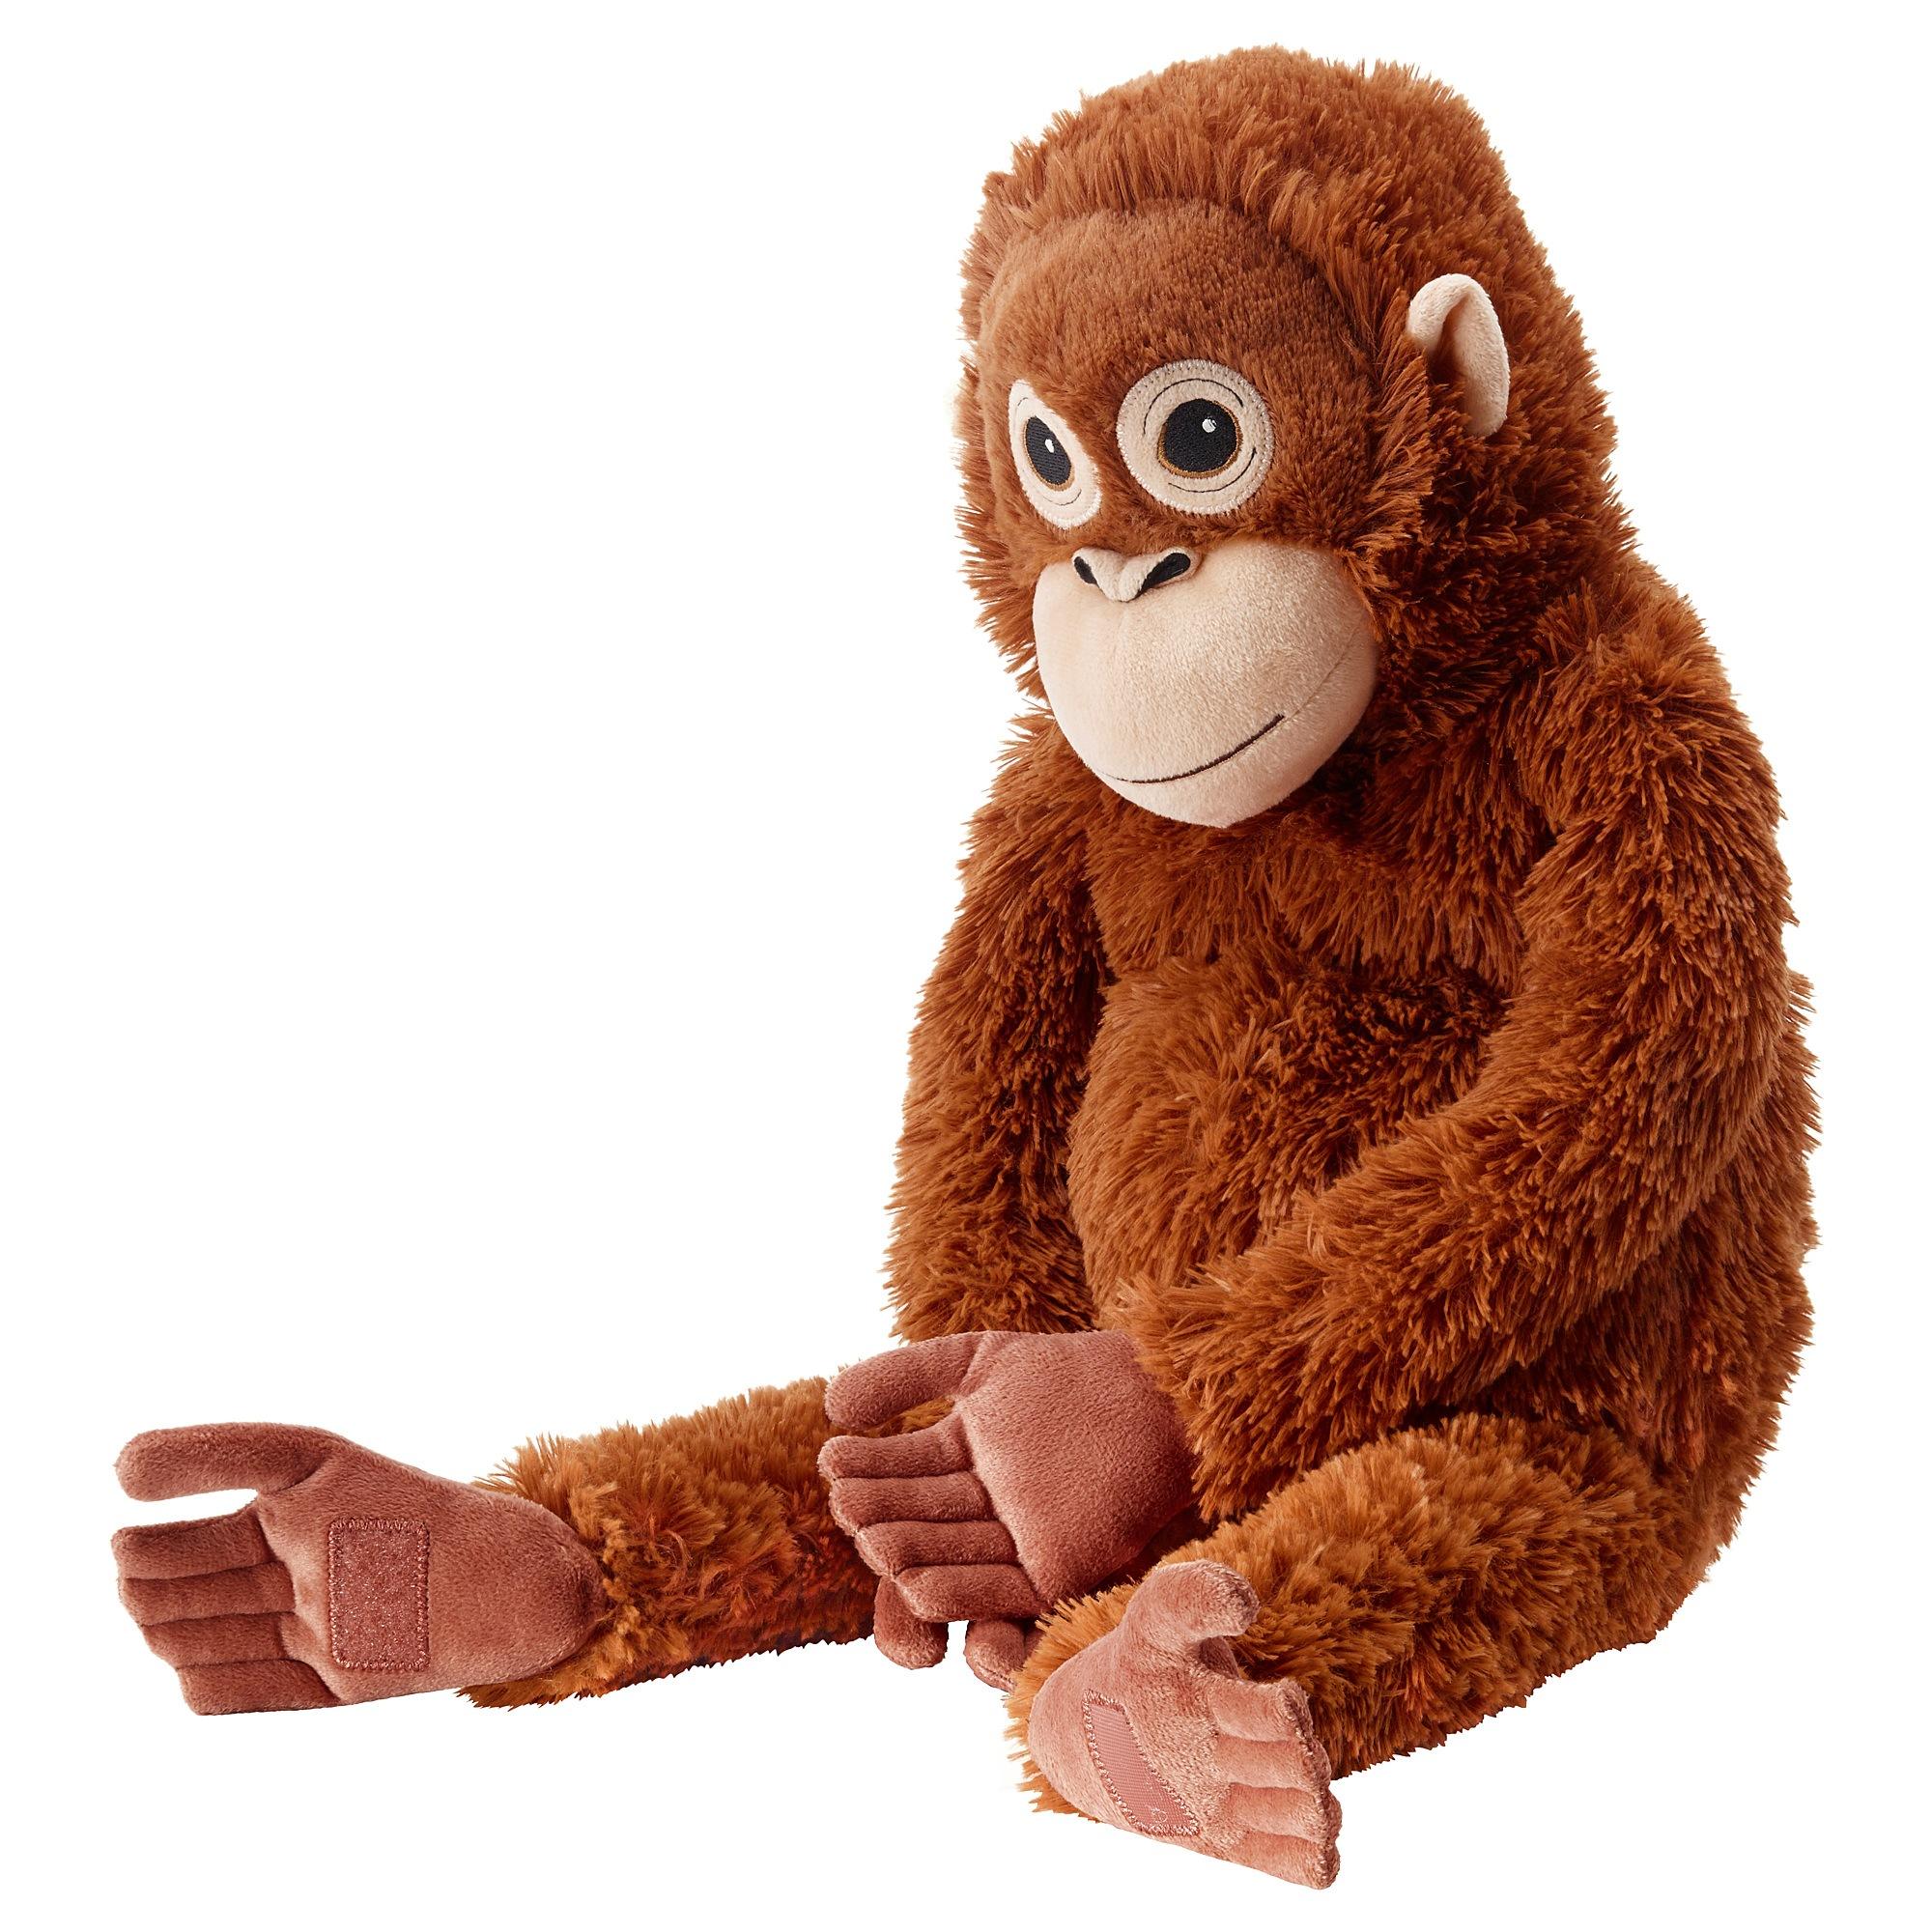 ИКЕА ДЖУНГЕЛЬСЬКОГО М'яка іграшка - орангутанг, 004.028.08